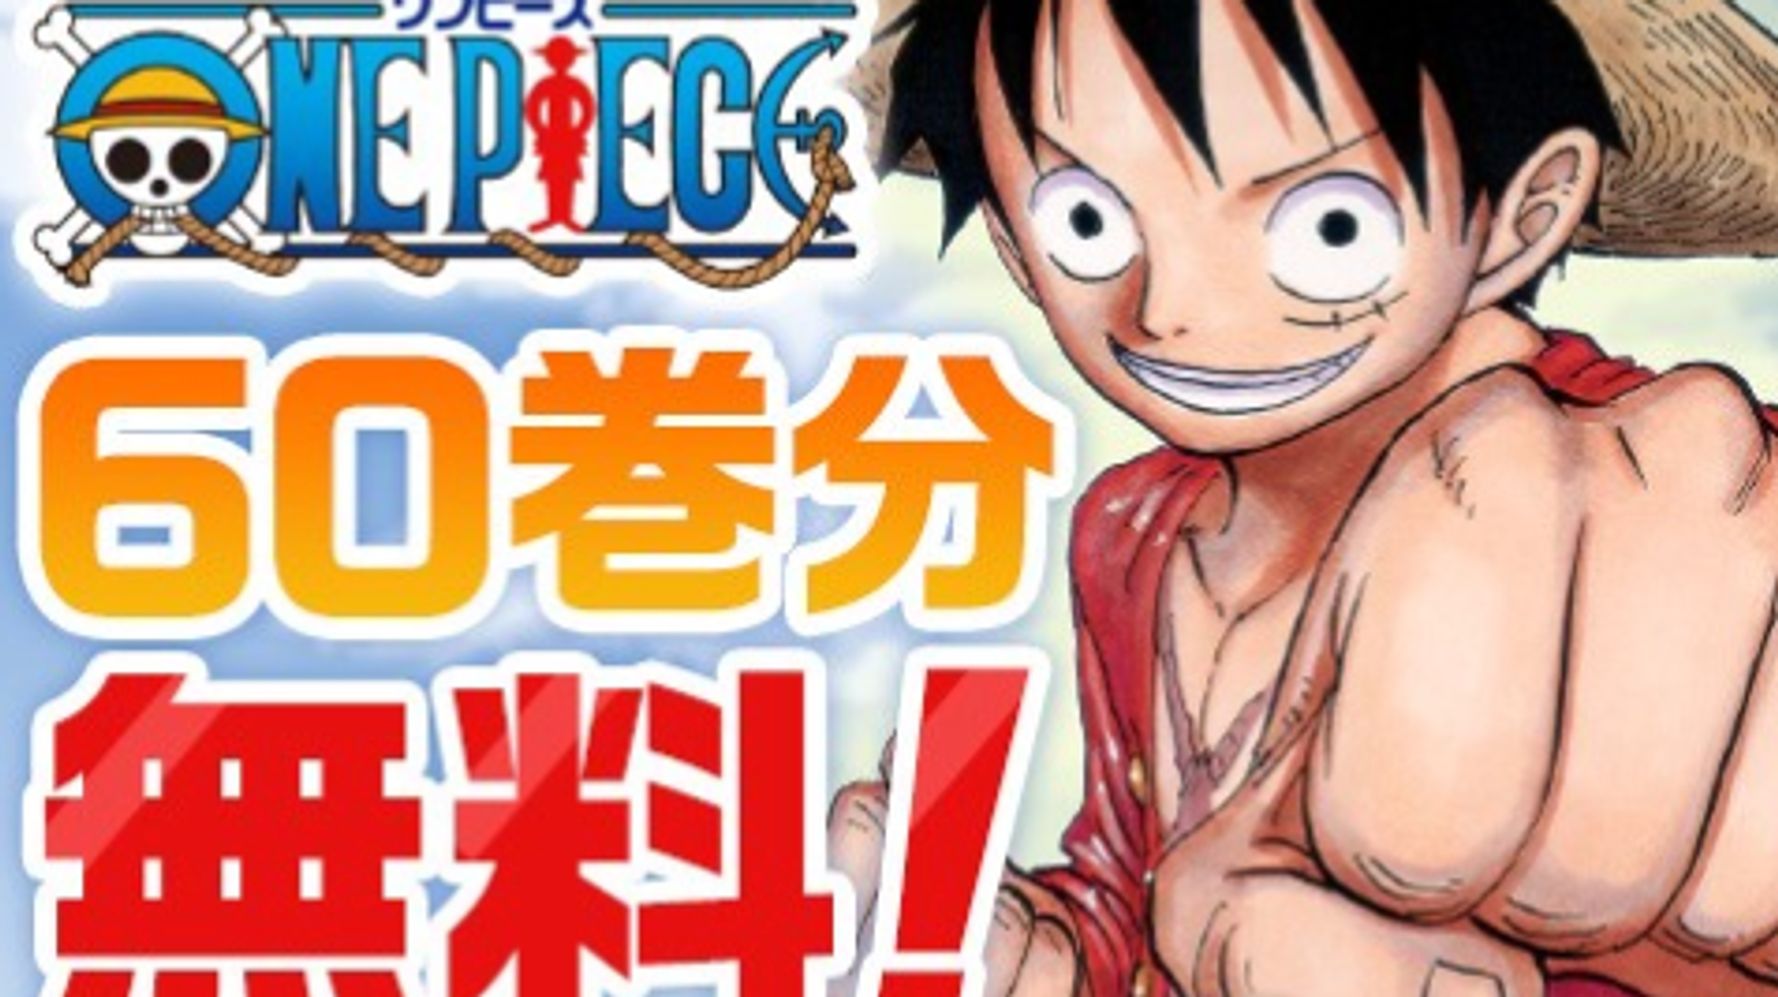 人気マンガ One Piece が4月5日まで無料で読める 1巻から60巻を配信 新型コロナの臨時休校でもうれしい話題 ハフポスト アートとカルチャー